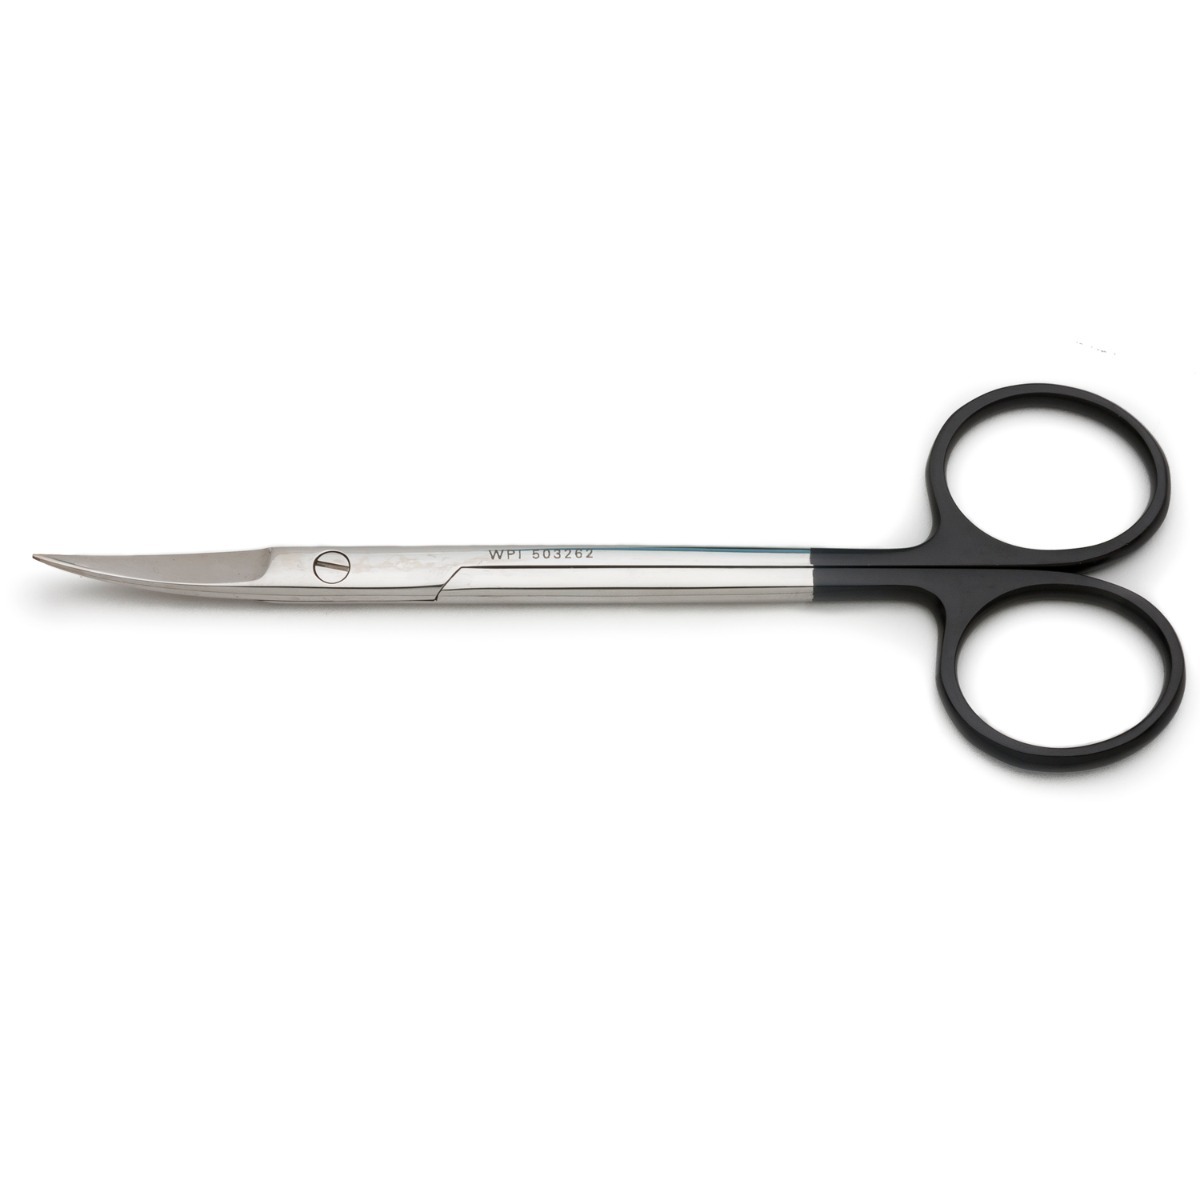 Iris Scissors 4.5 in Curved 25mm Sharp/Sharp SuperCut